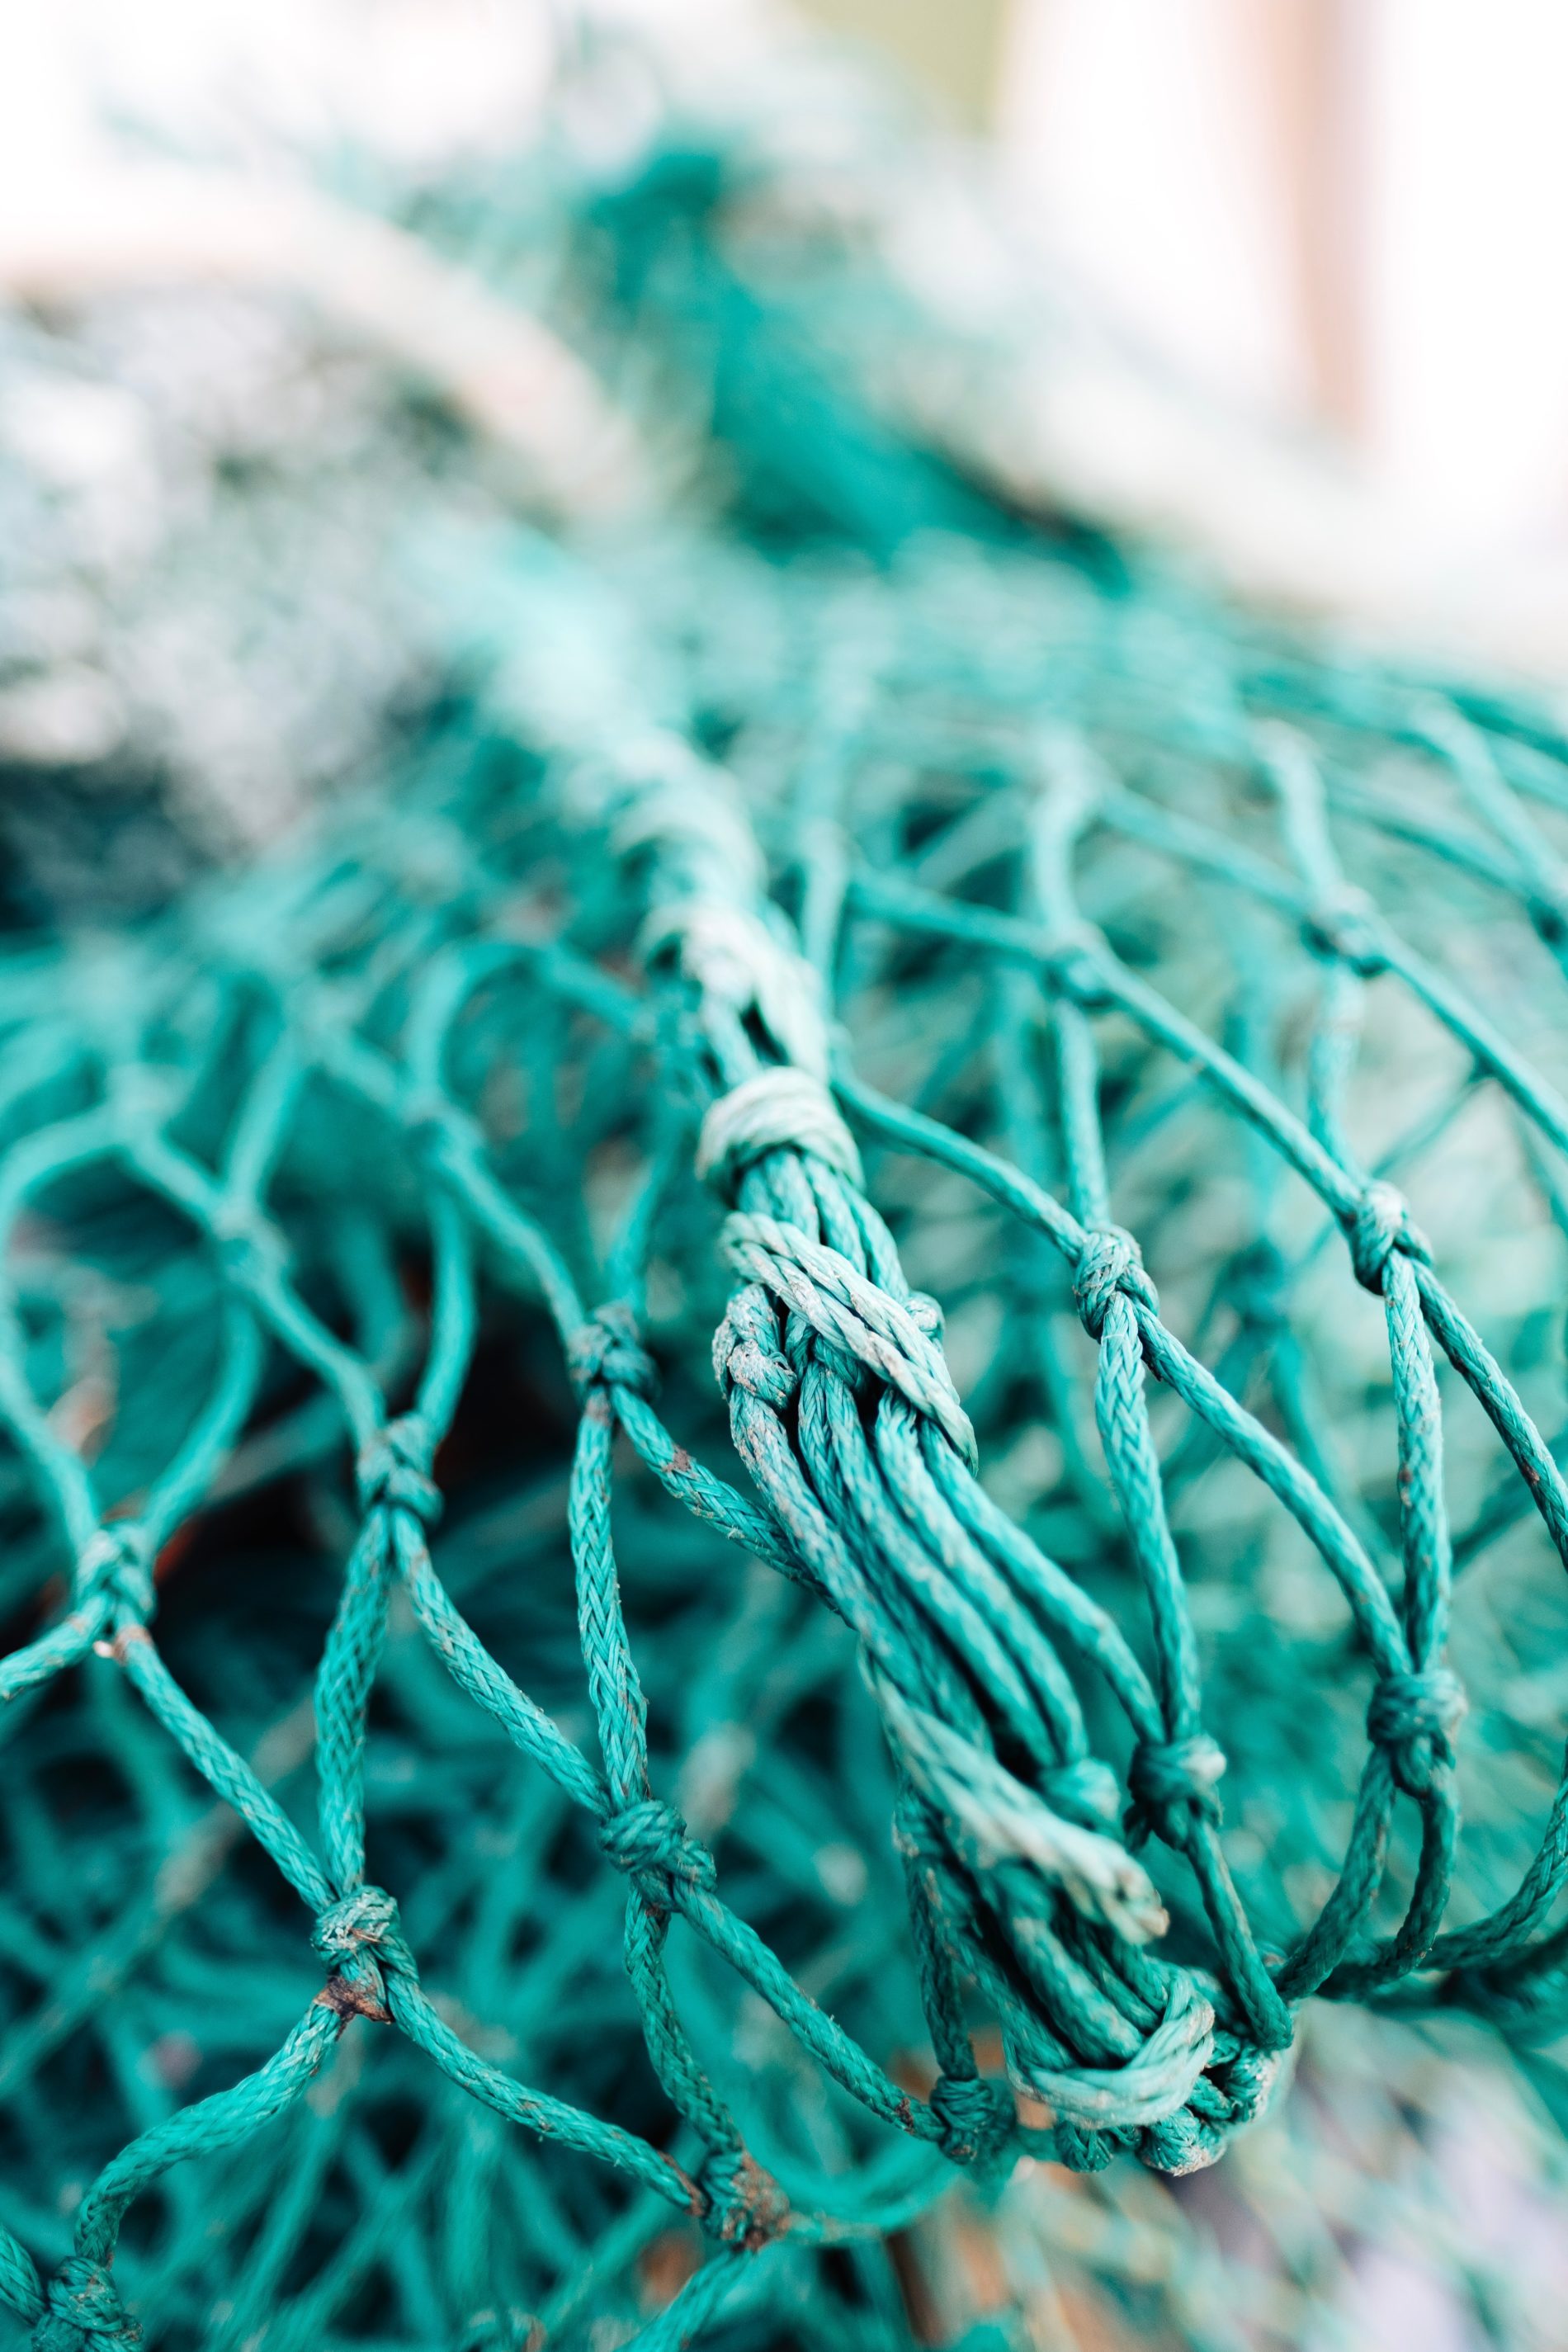 A blue fishing net